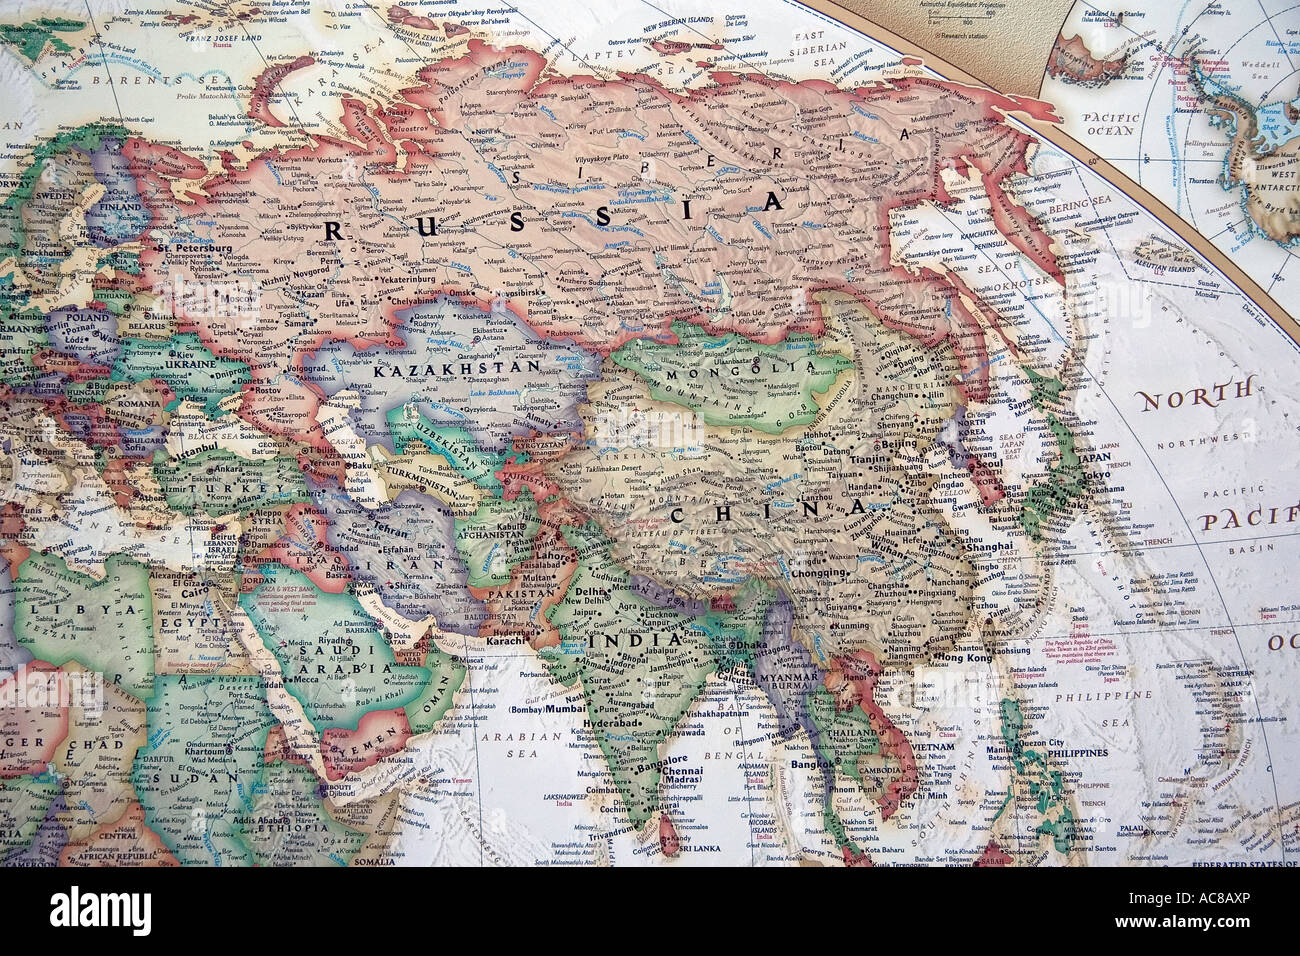 Vue couvrant de nombreux pays, dont la Russie, la Chine, Israël, et beaucoup d'autres, sur une amende, détaillée et colorée carte du monde. Banque D'Images